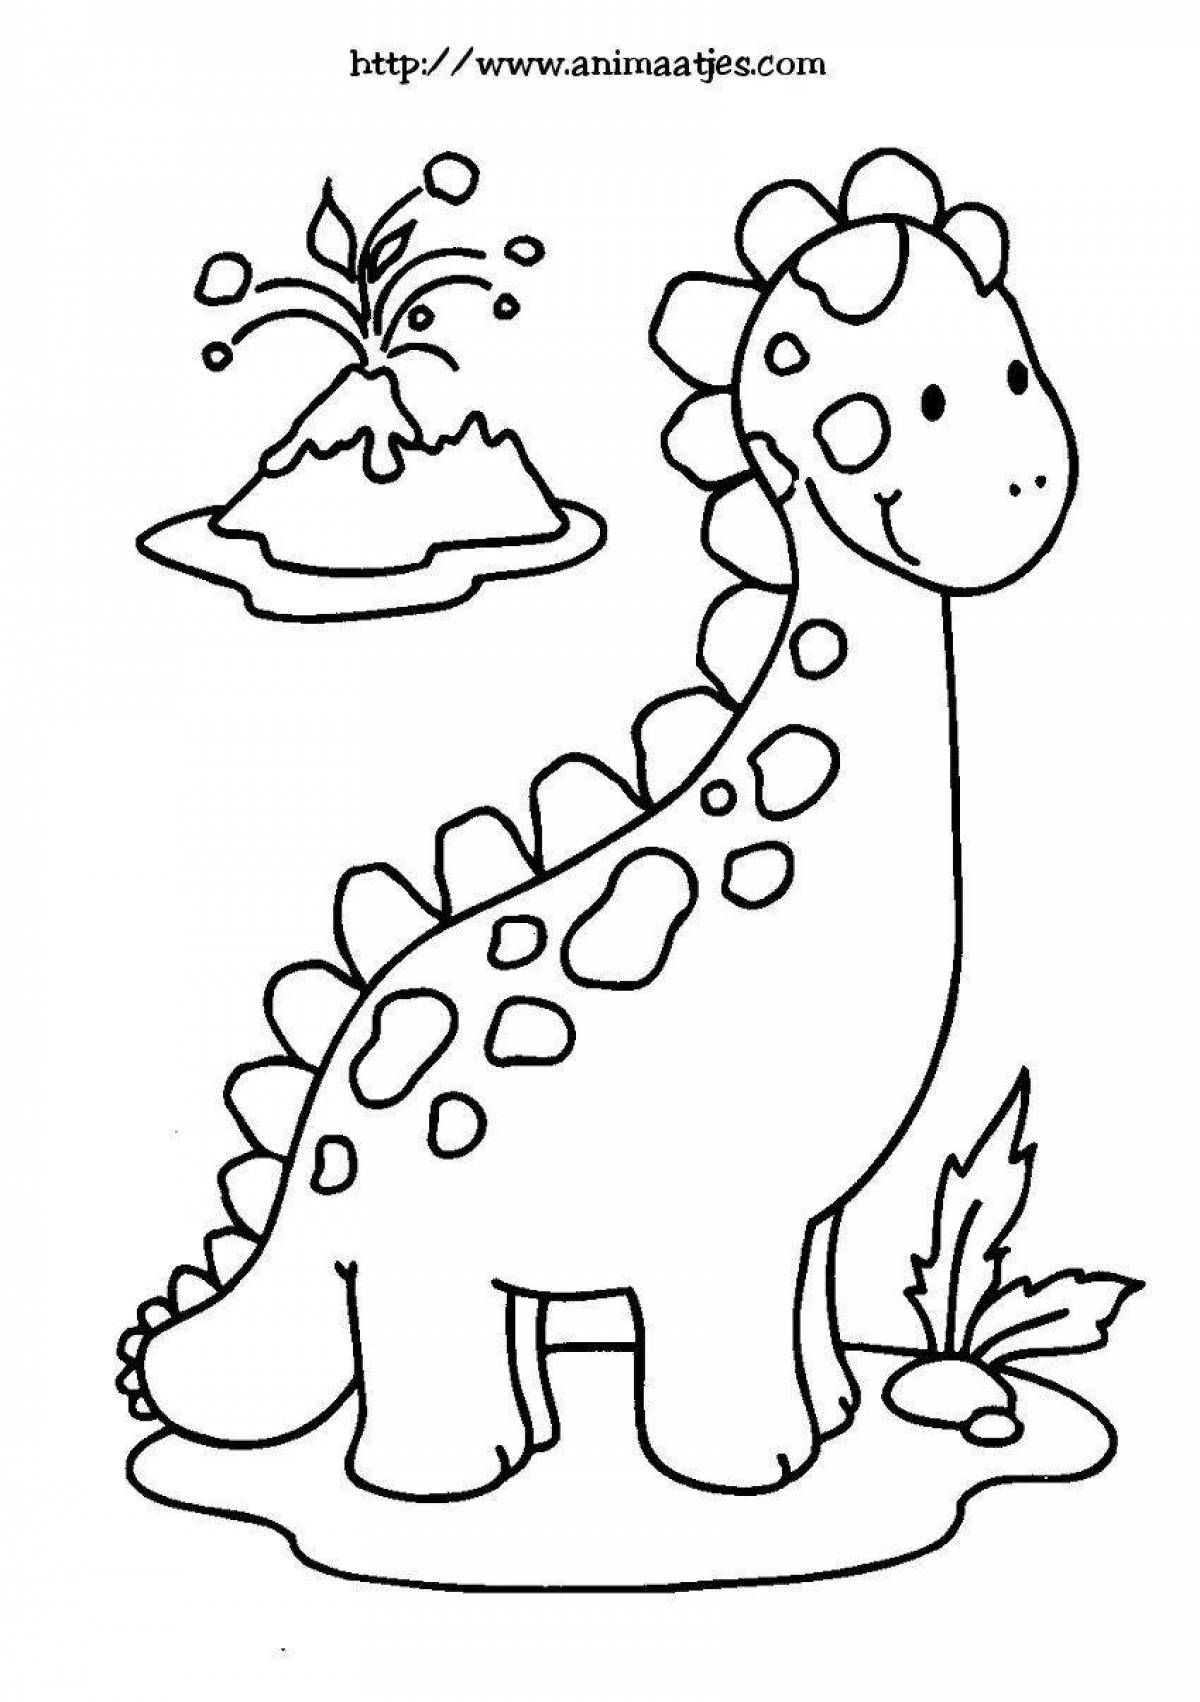 Яркая раскраска динозавров для детей